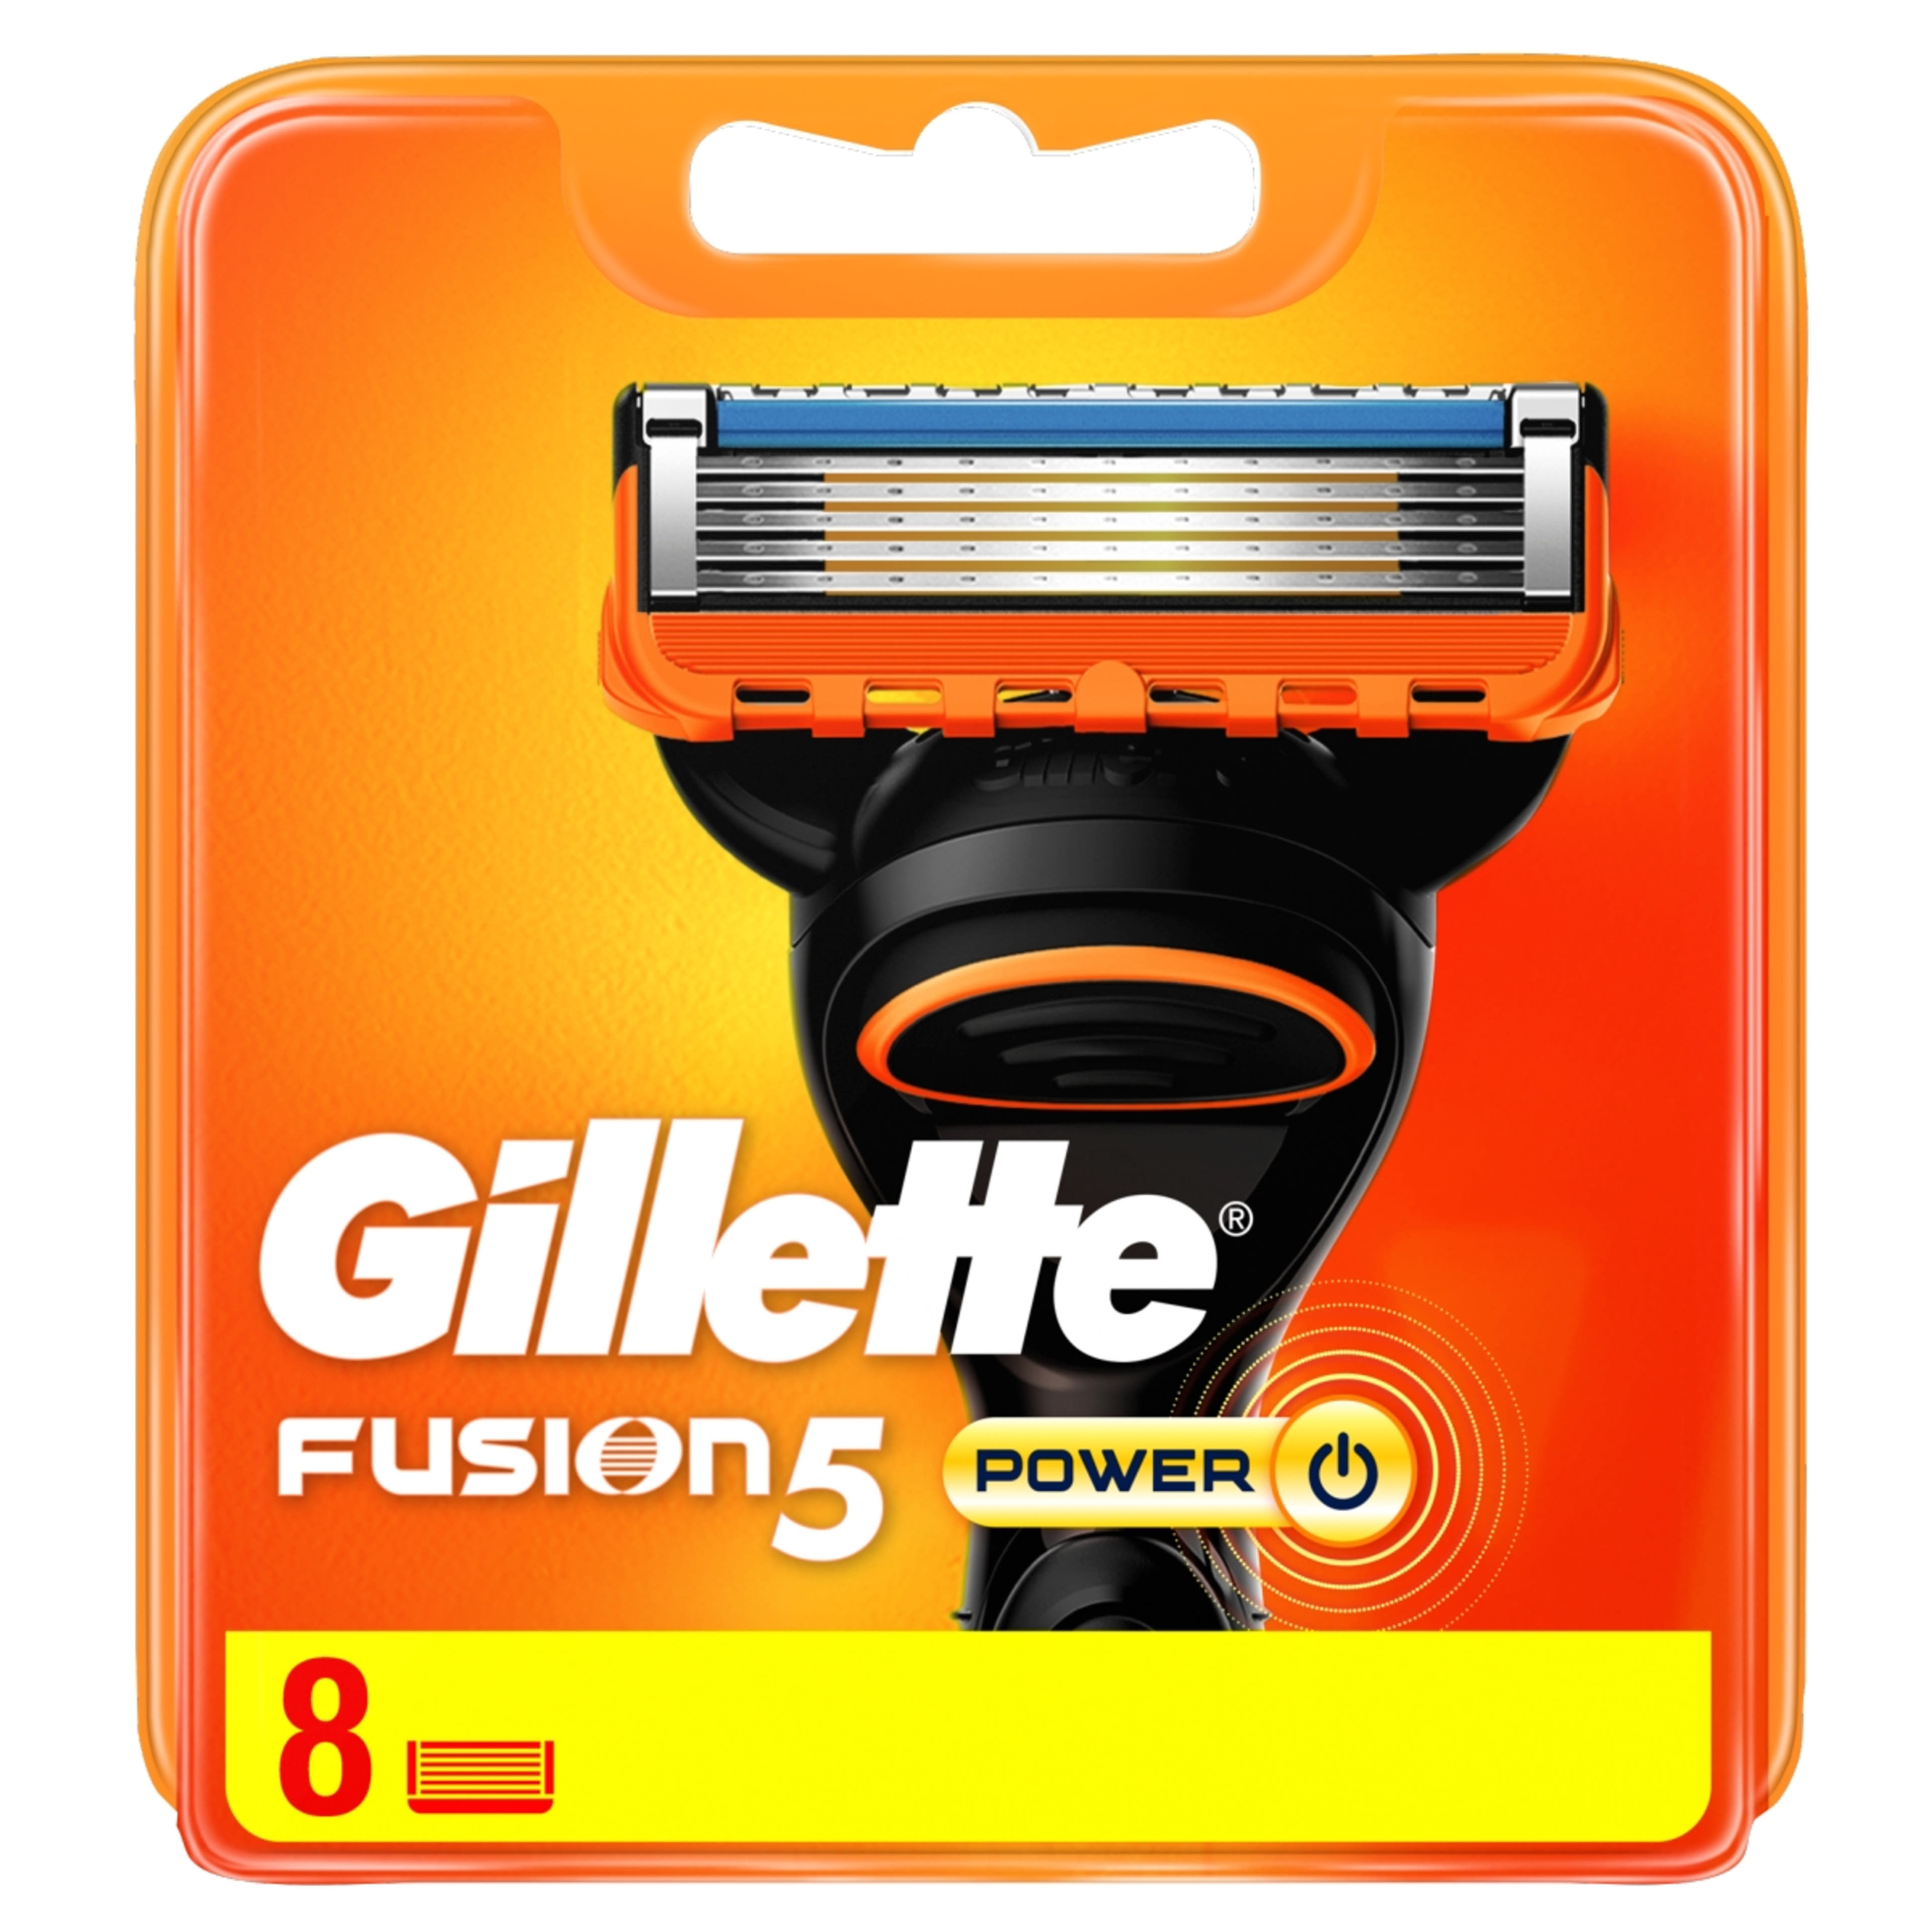 Gillette Fusion5 Power borotvabetét - 8 db